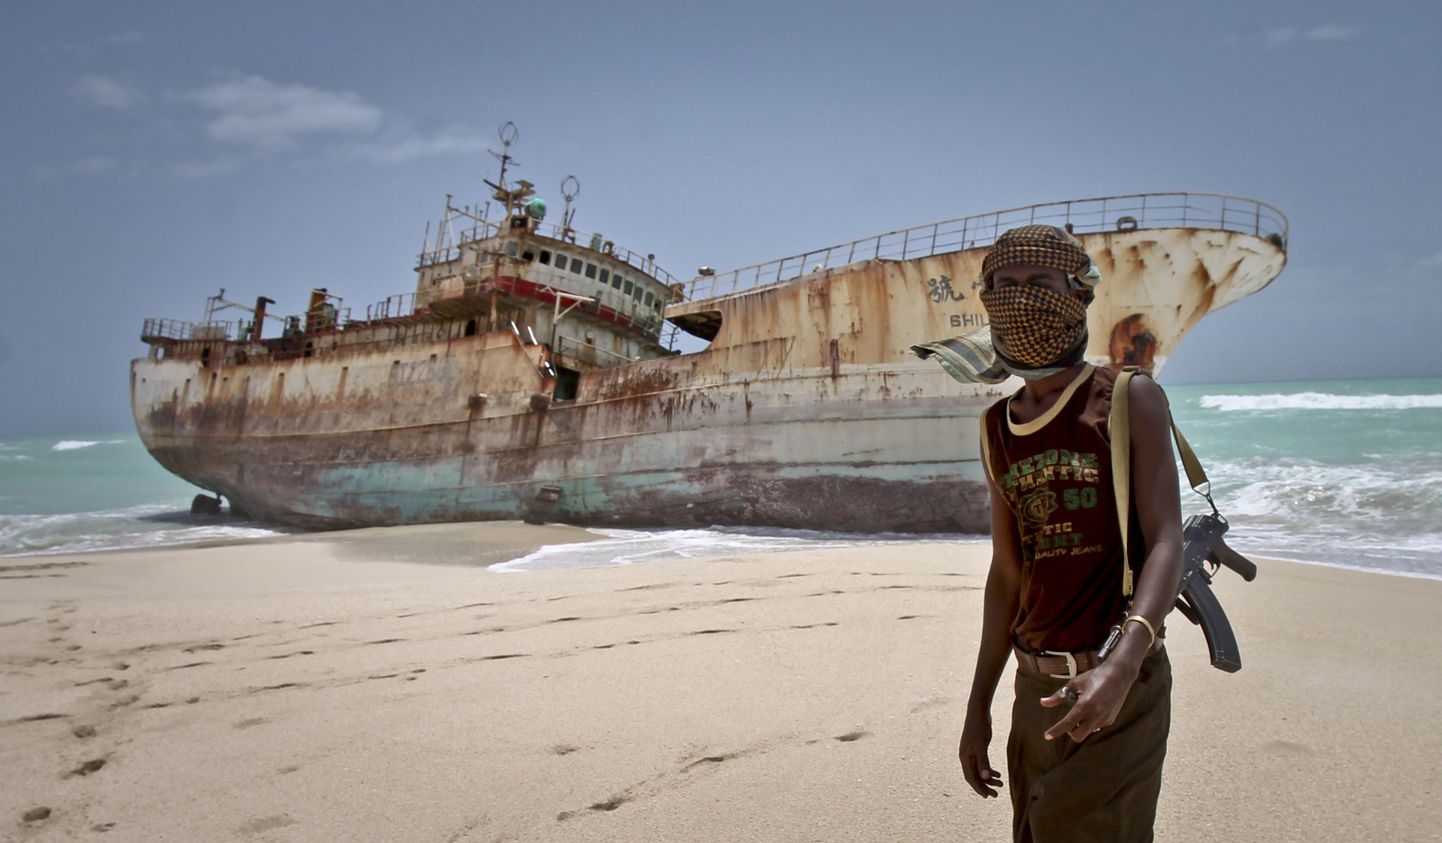 Somaalia piraat hoiab silma peal Taiwani kalalaeval, mille omanik maksis hõivajatele lunaraha ära ja mille meeskond pääses seetõttu vabaks.